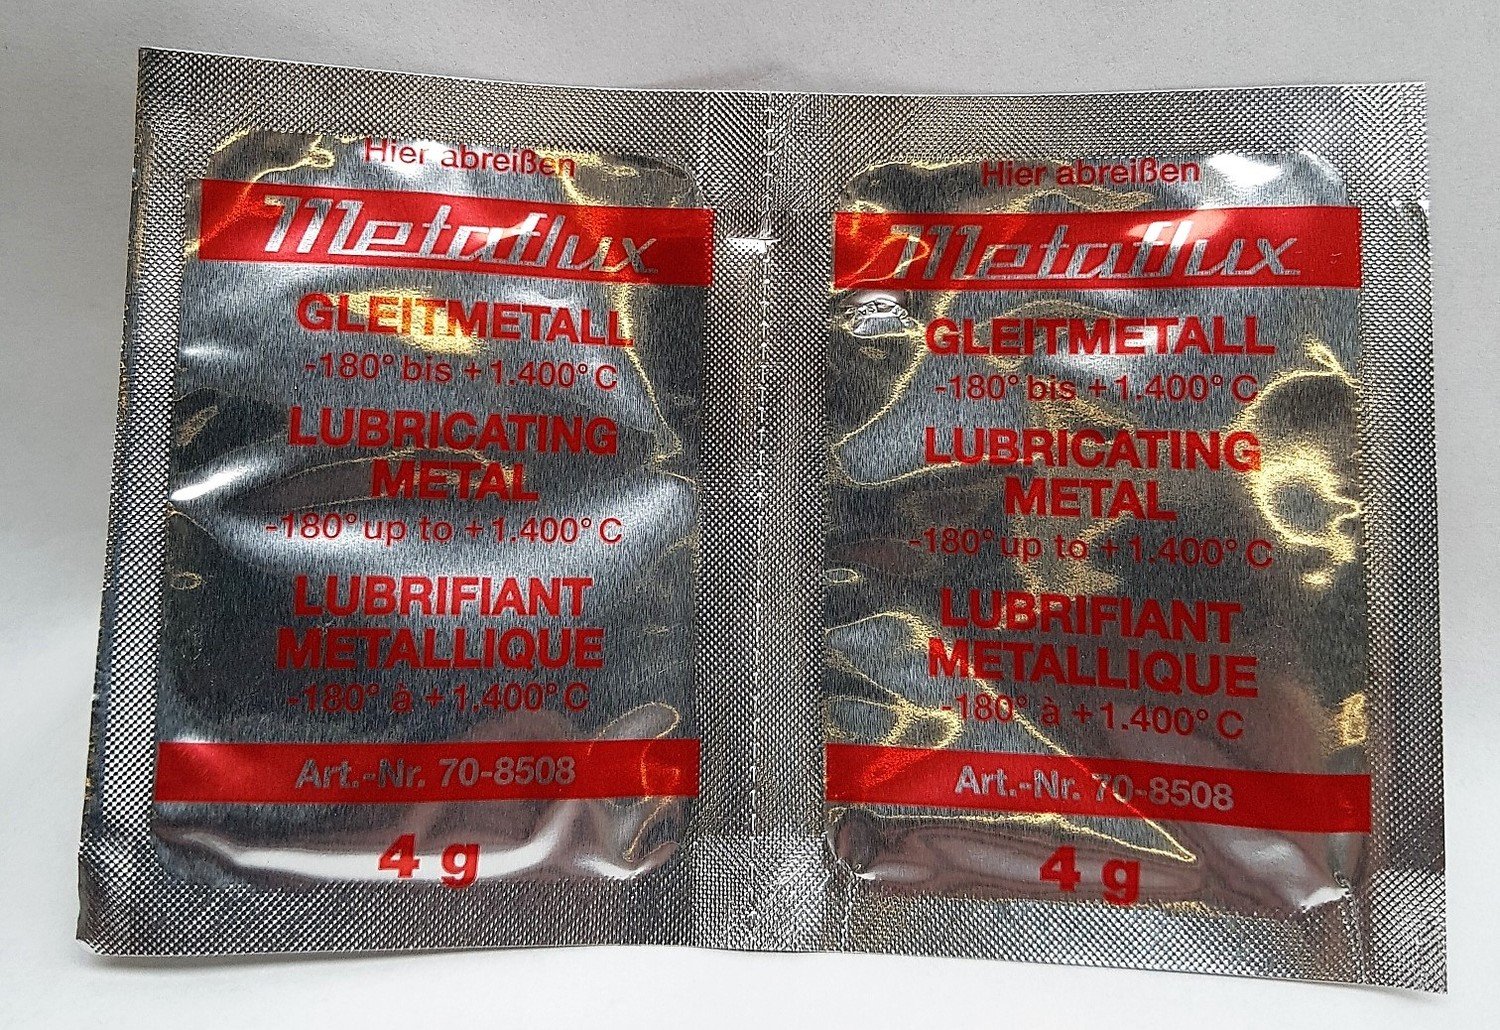 Metaflux glijmetaal pasta, inhoud: 100 x 4 gr